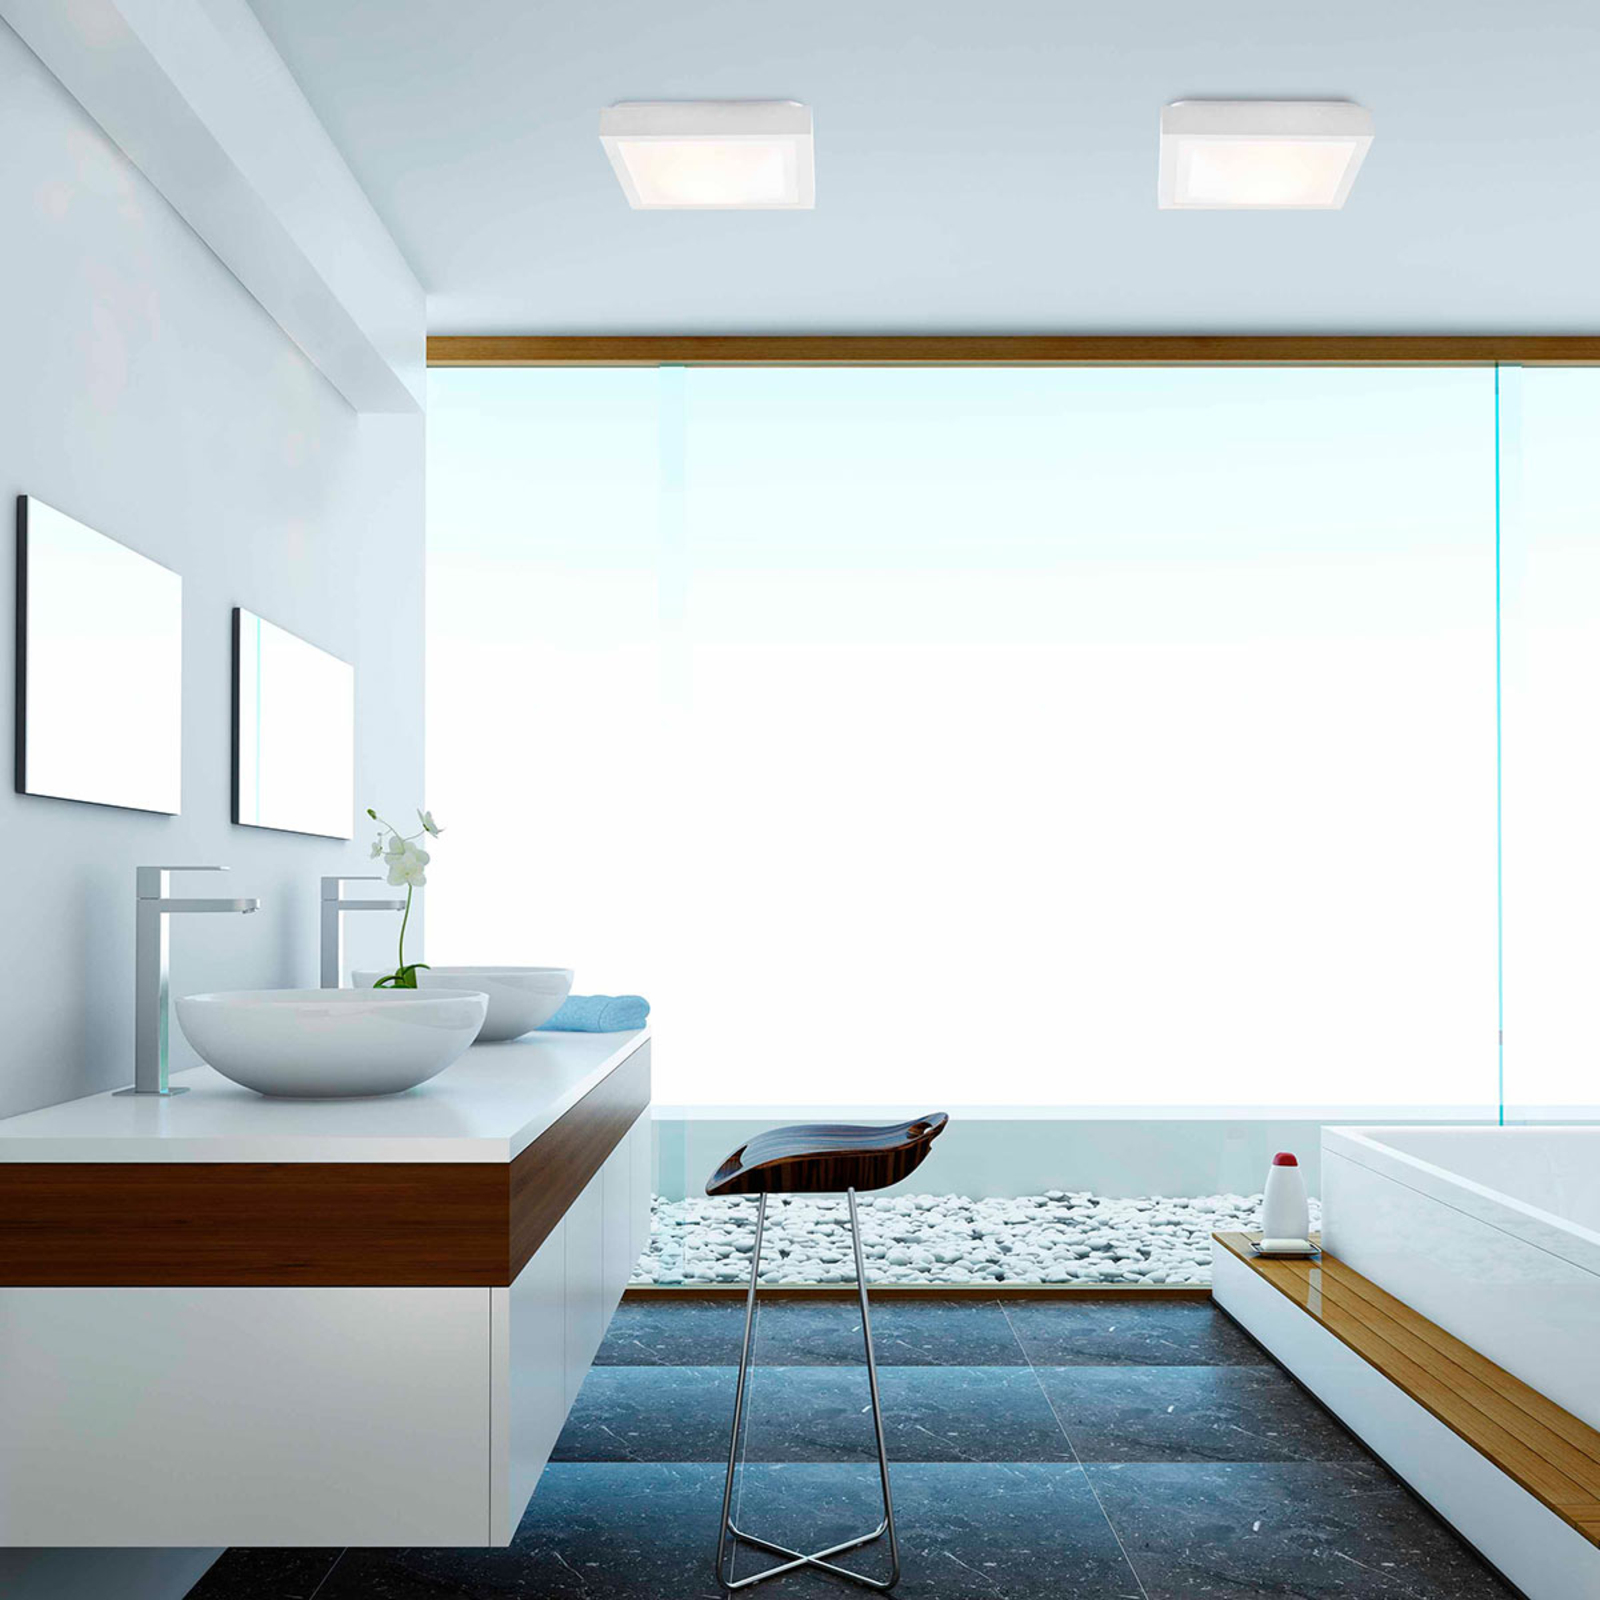 Tola bathroom ceiling light, 32 x 32 cm, white